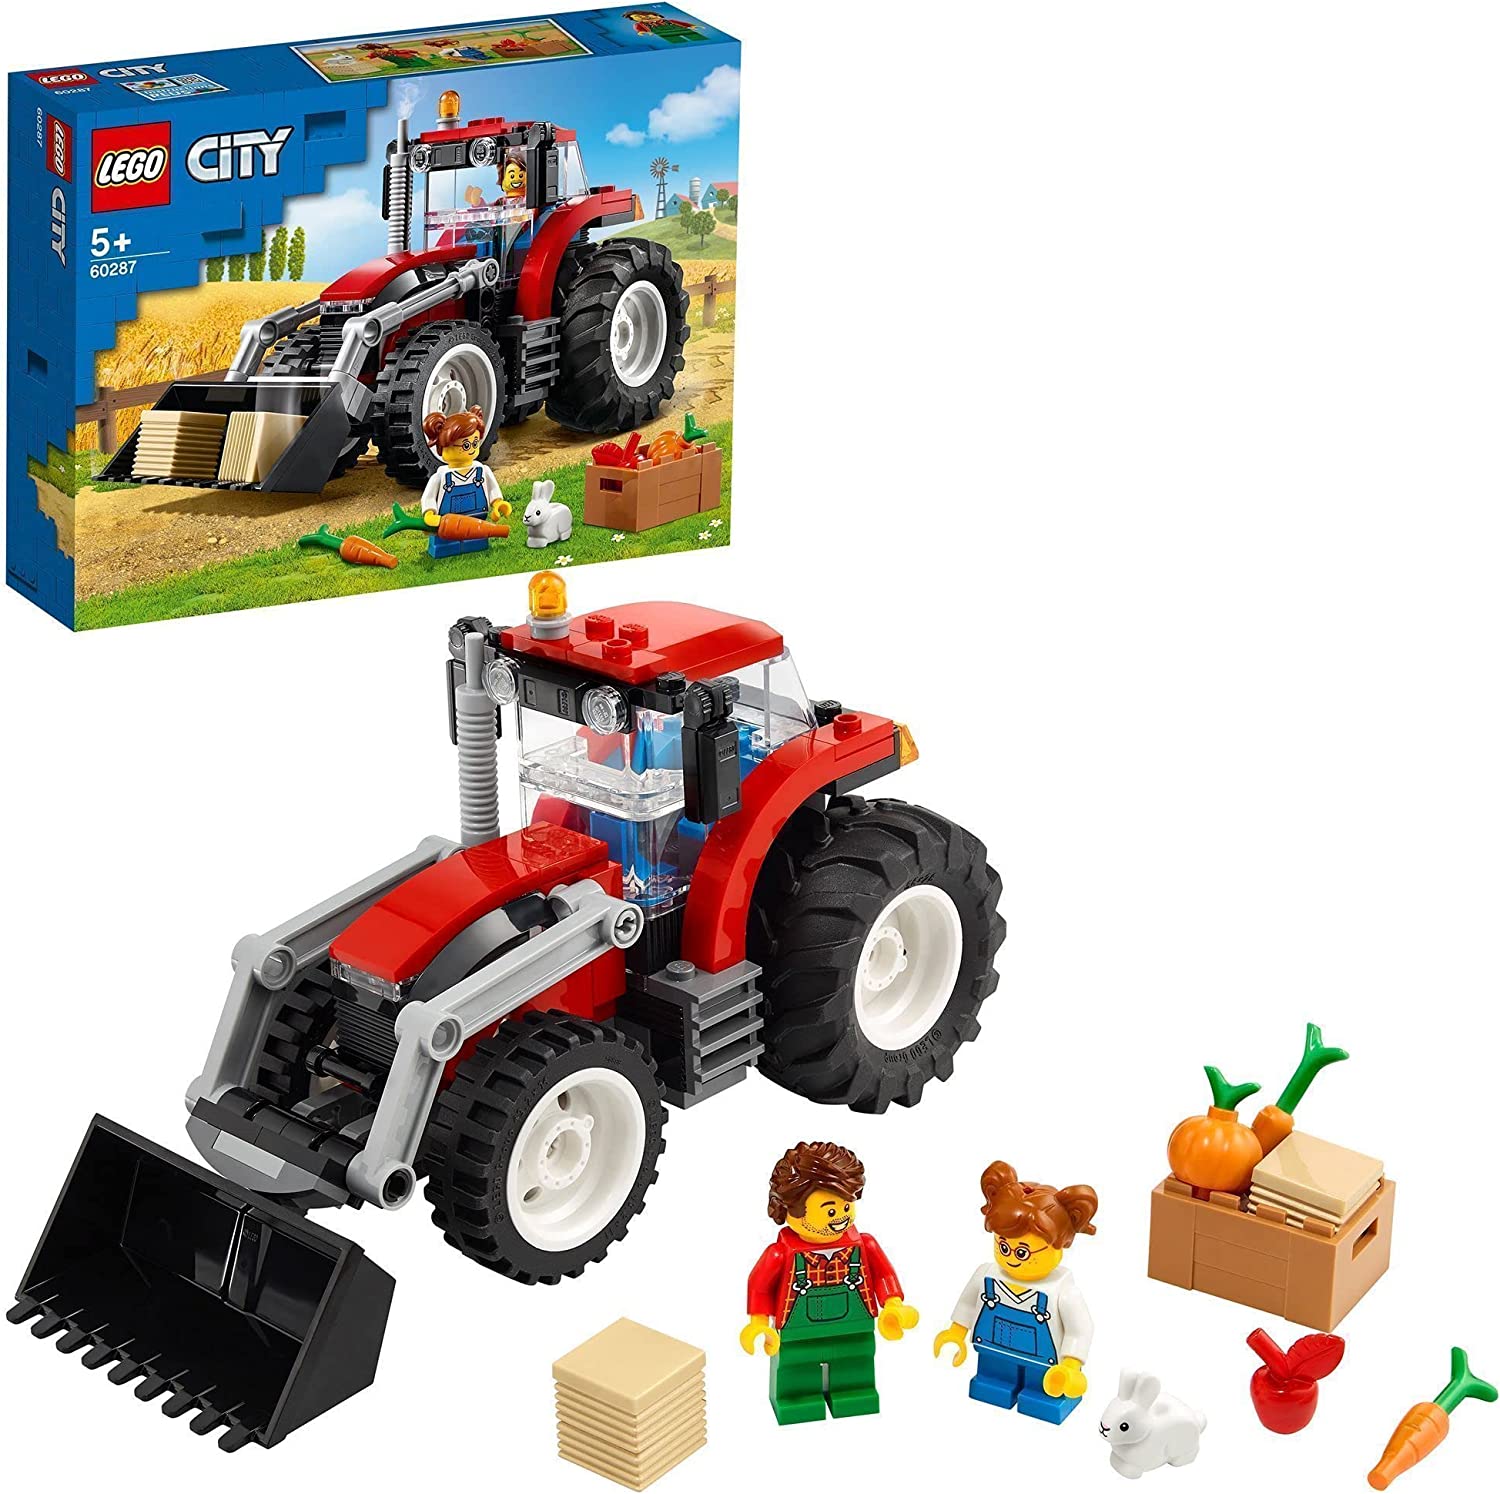 レゴ(LEGO) シティ トラクター 60287